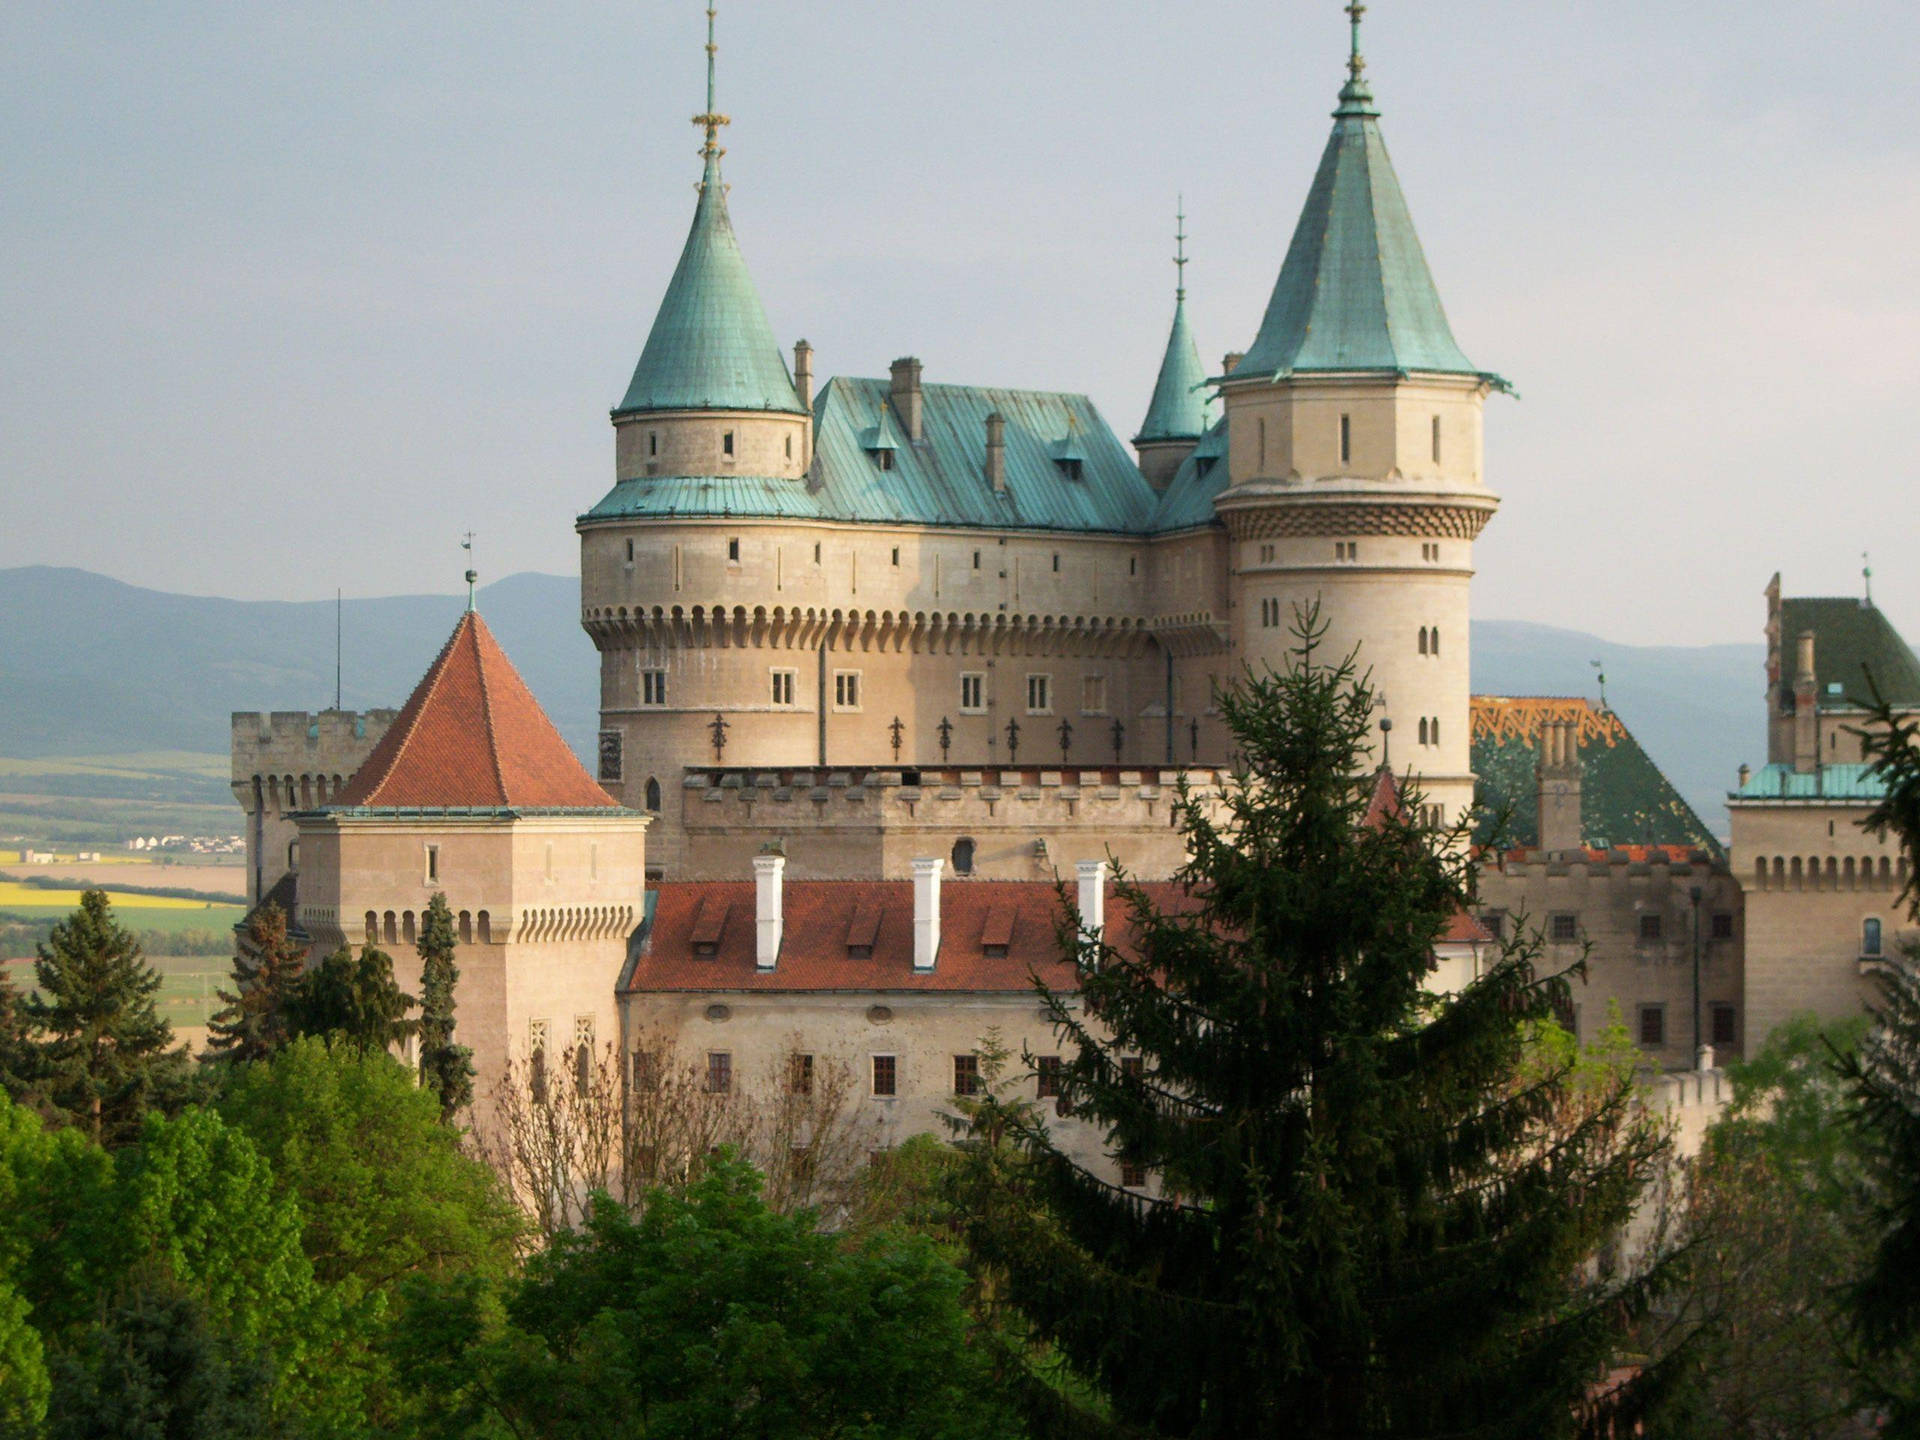 Slovakia's Bojnice Castle